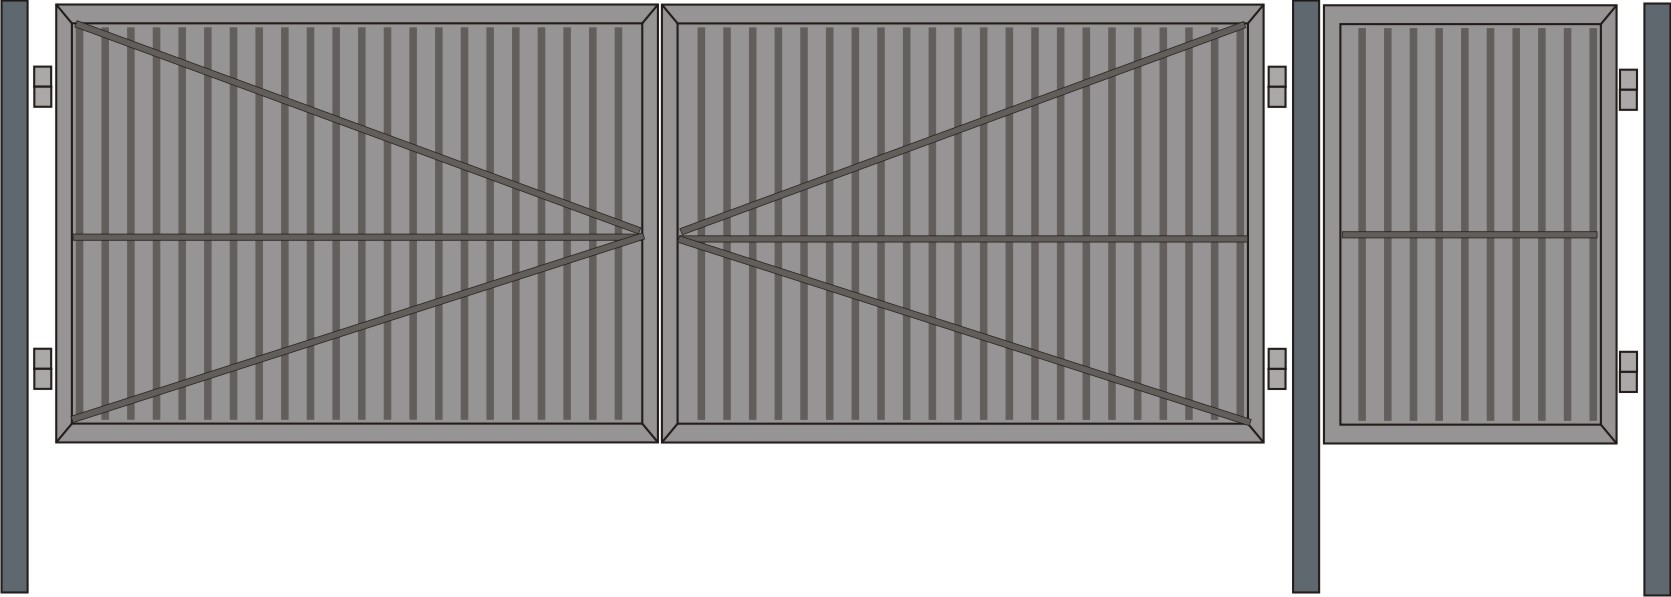 Распашные ворота из профнастила – конструкция, проверенная временем